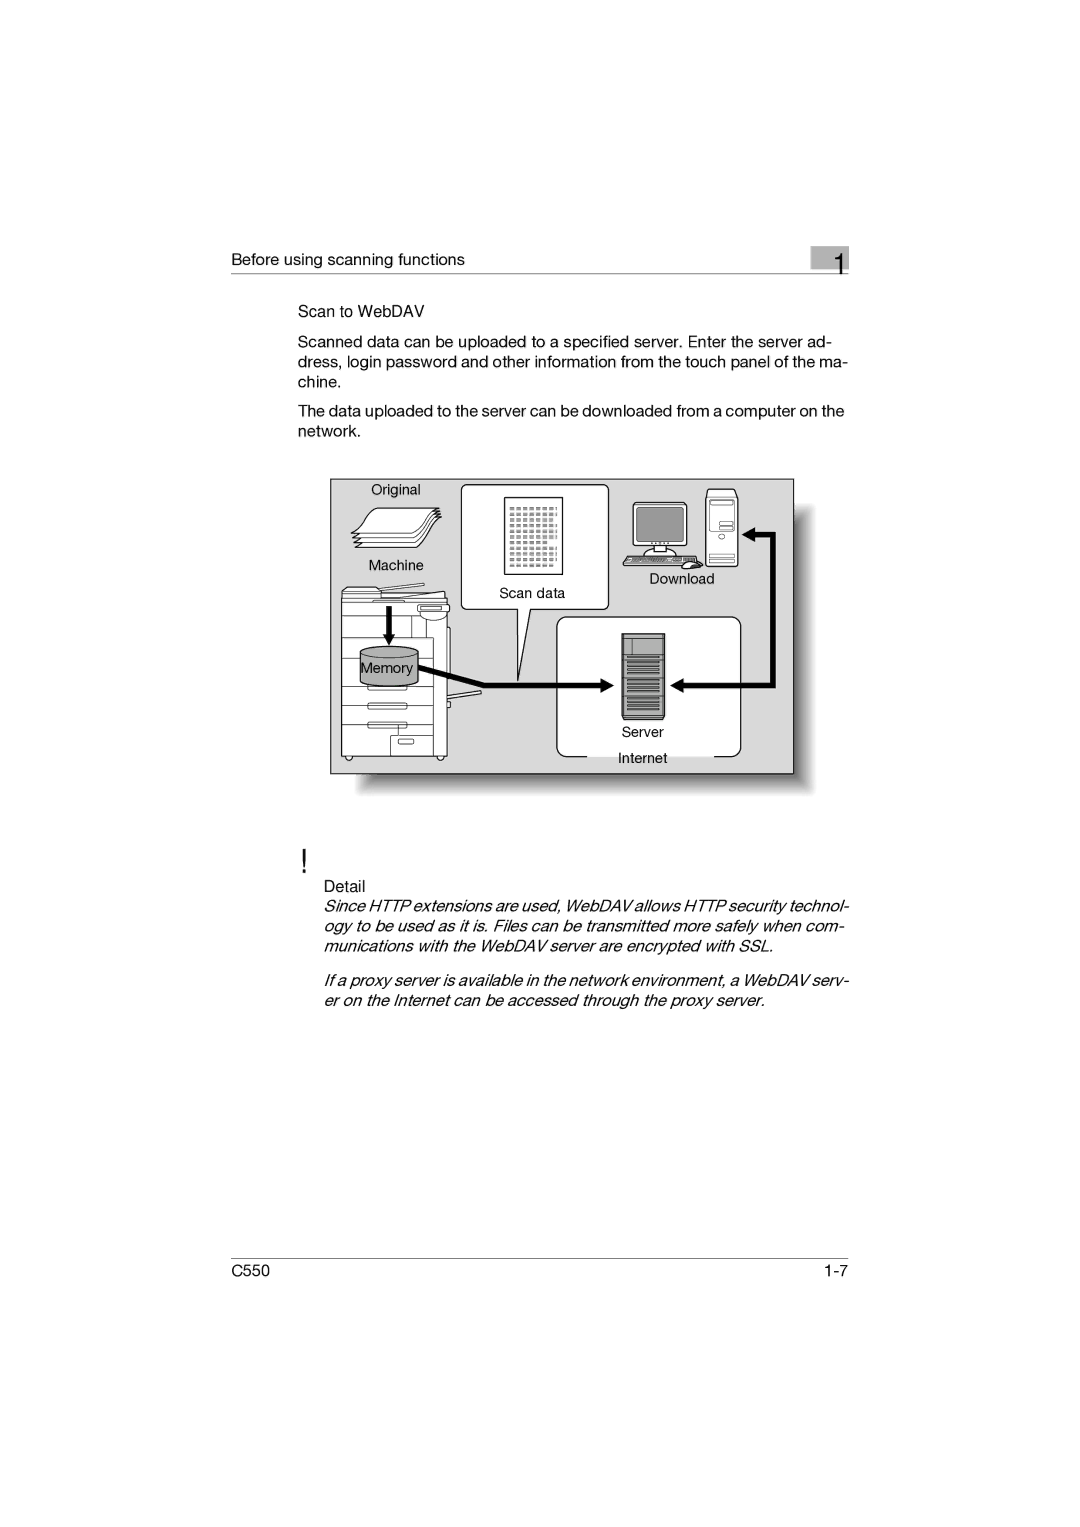 Konica Minolta C550 manual Scan to WebDAV, Detail 